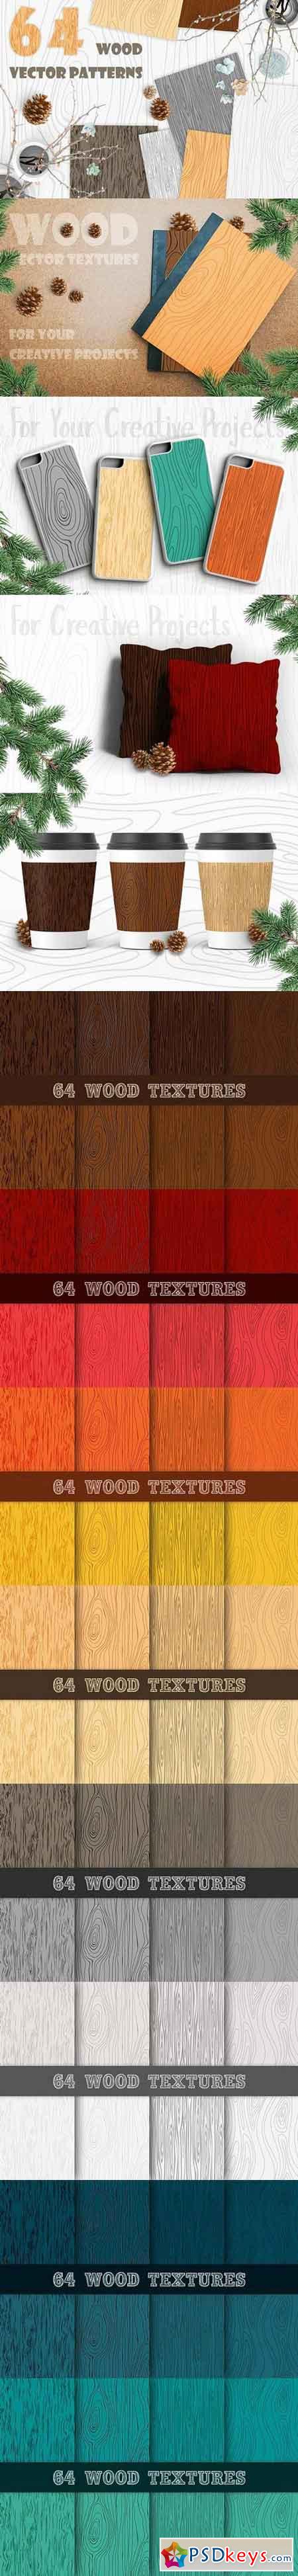 Wood Texture Vector Overlays 1441721